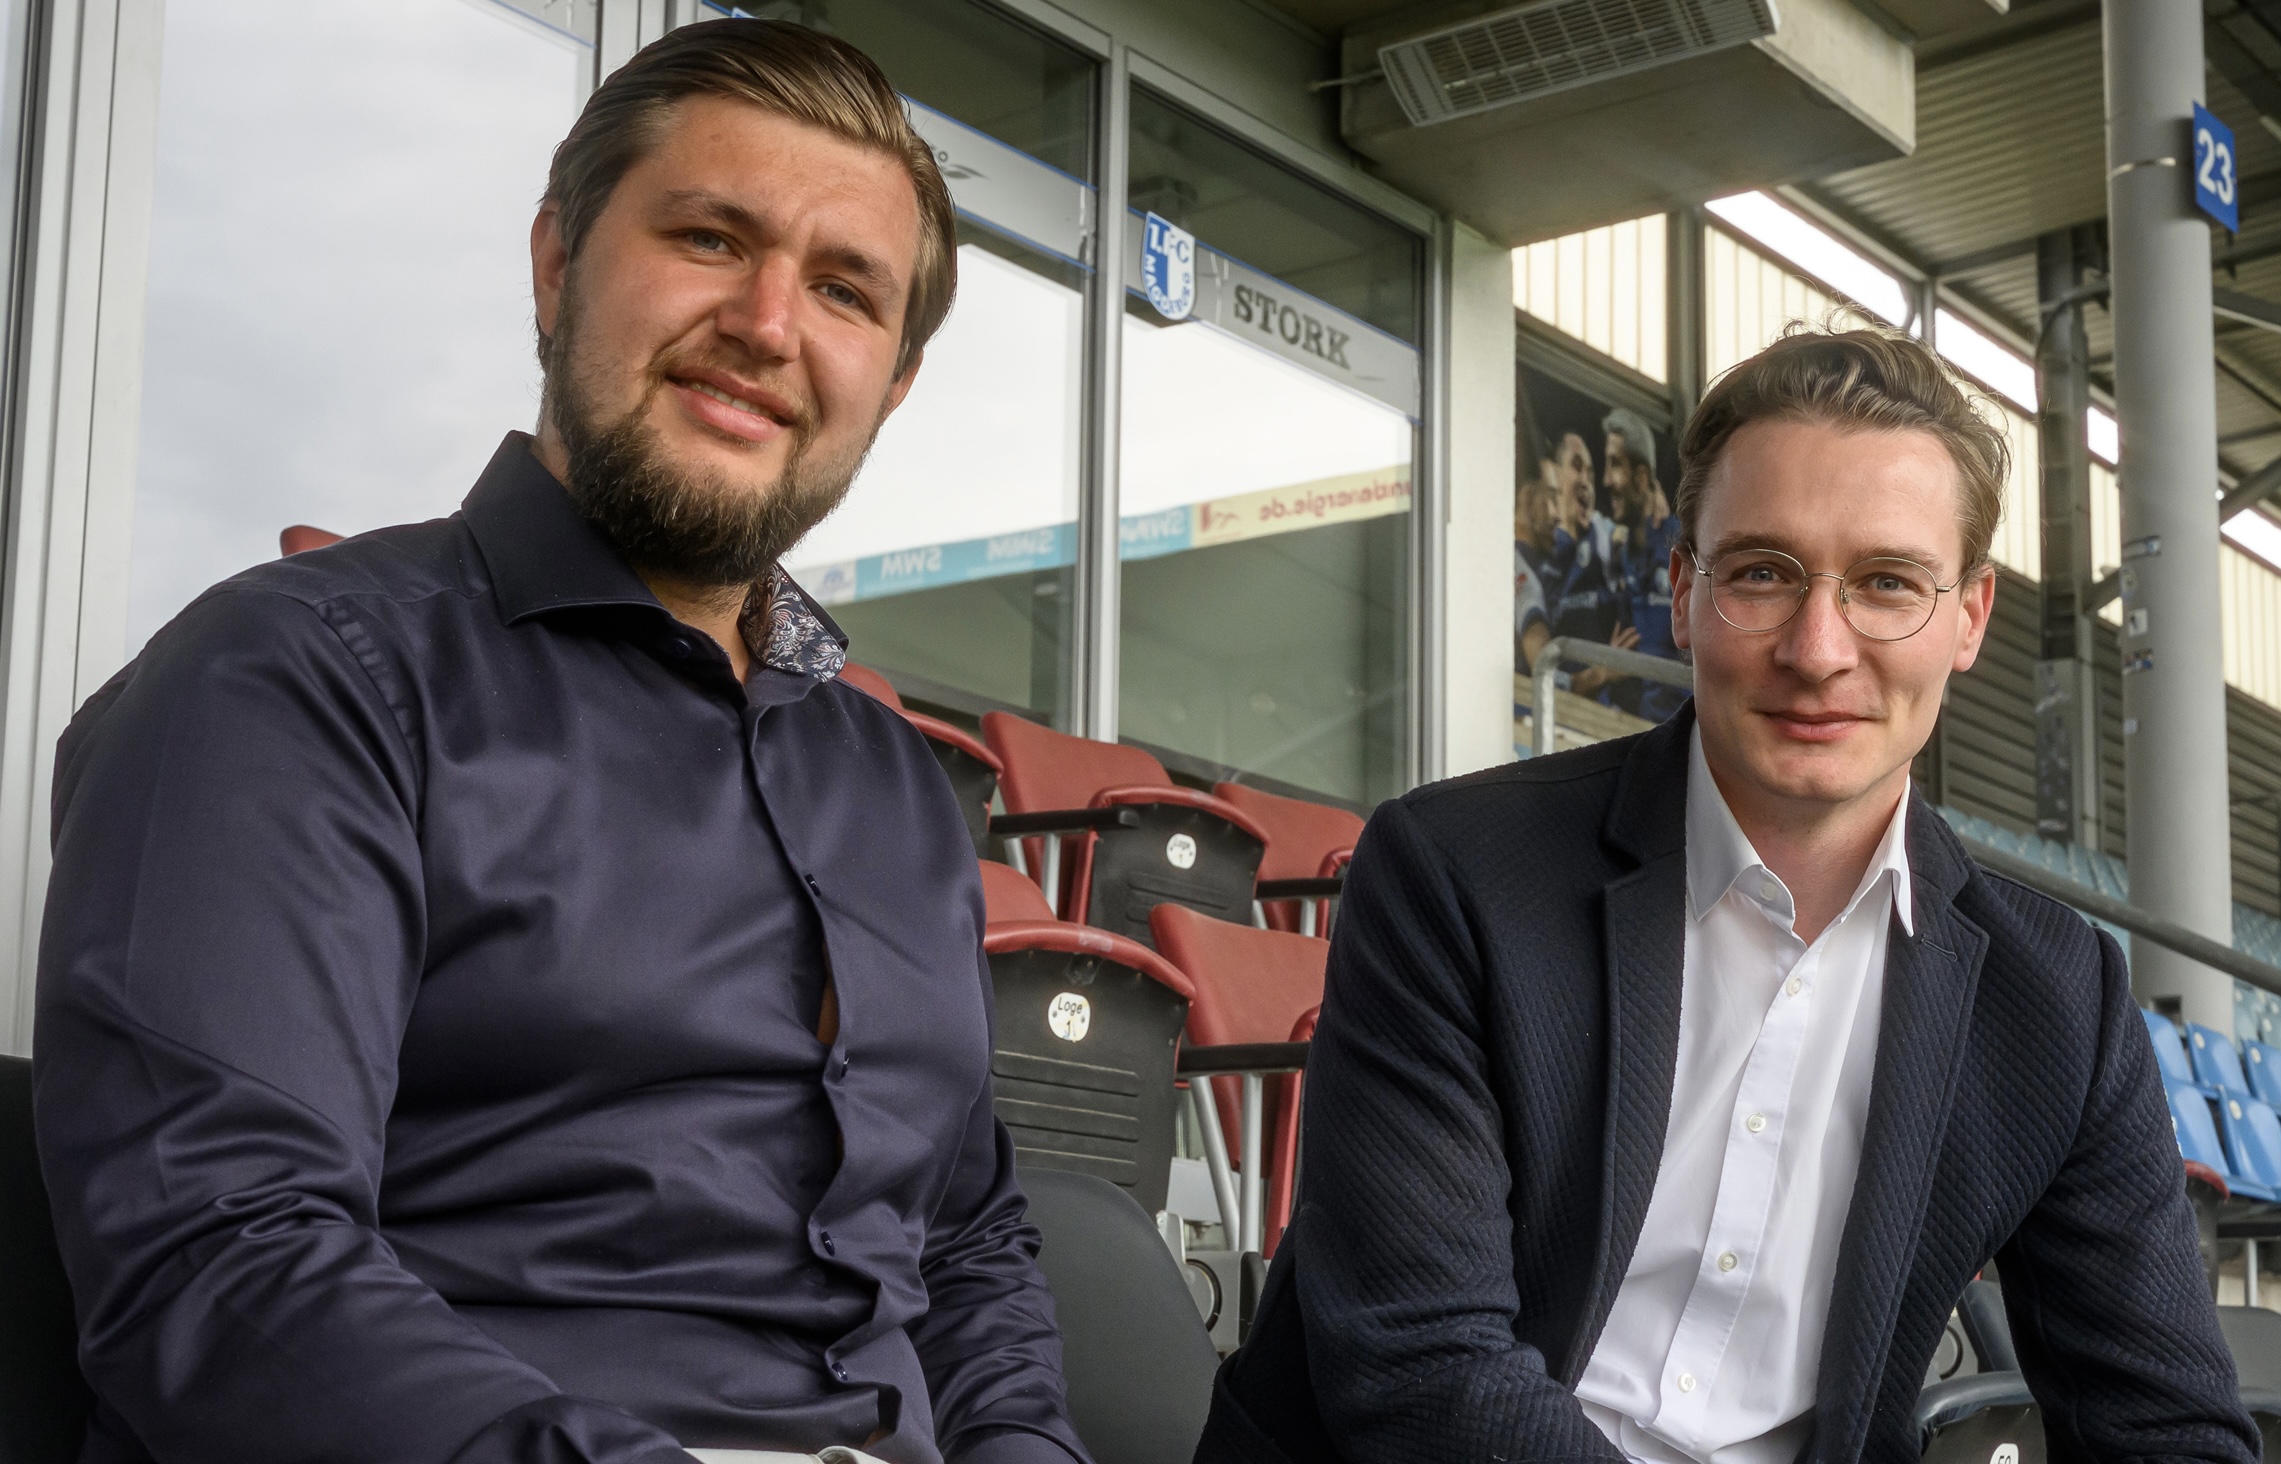 Paul Stork, Geschäftsführer der STORK Unternehmensgruppe und Martin Geisthardt, kaufmännischer Geschäftsführer des 1. FC Magdeburg.